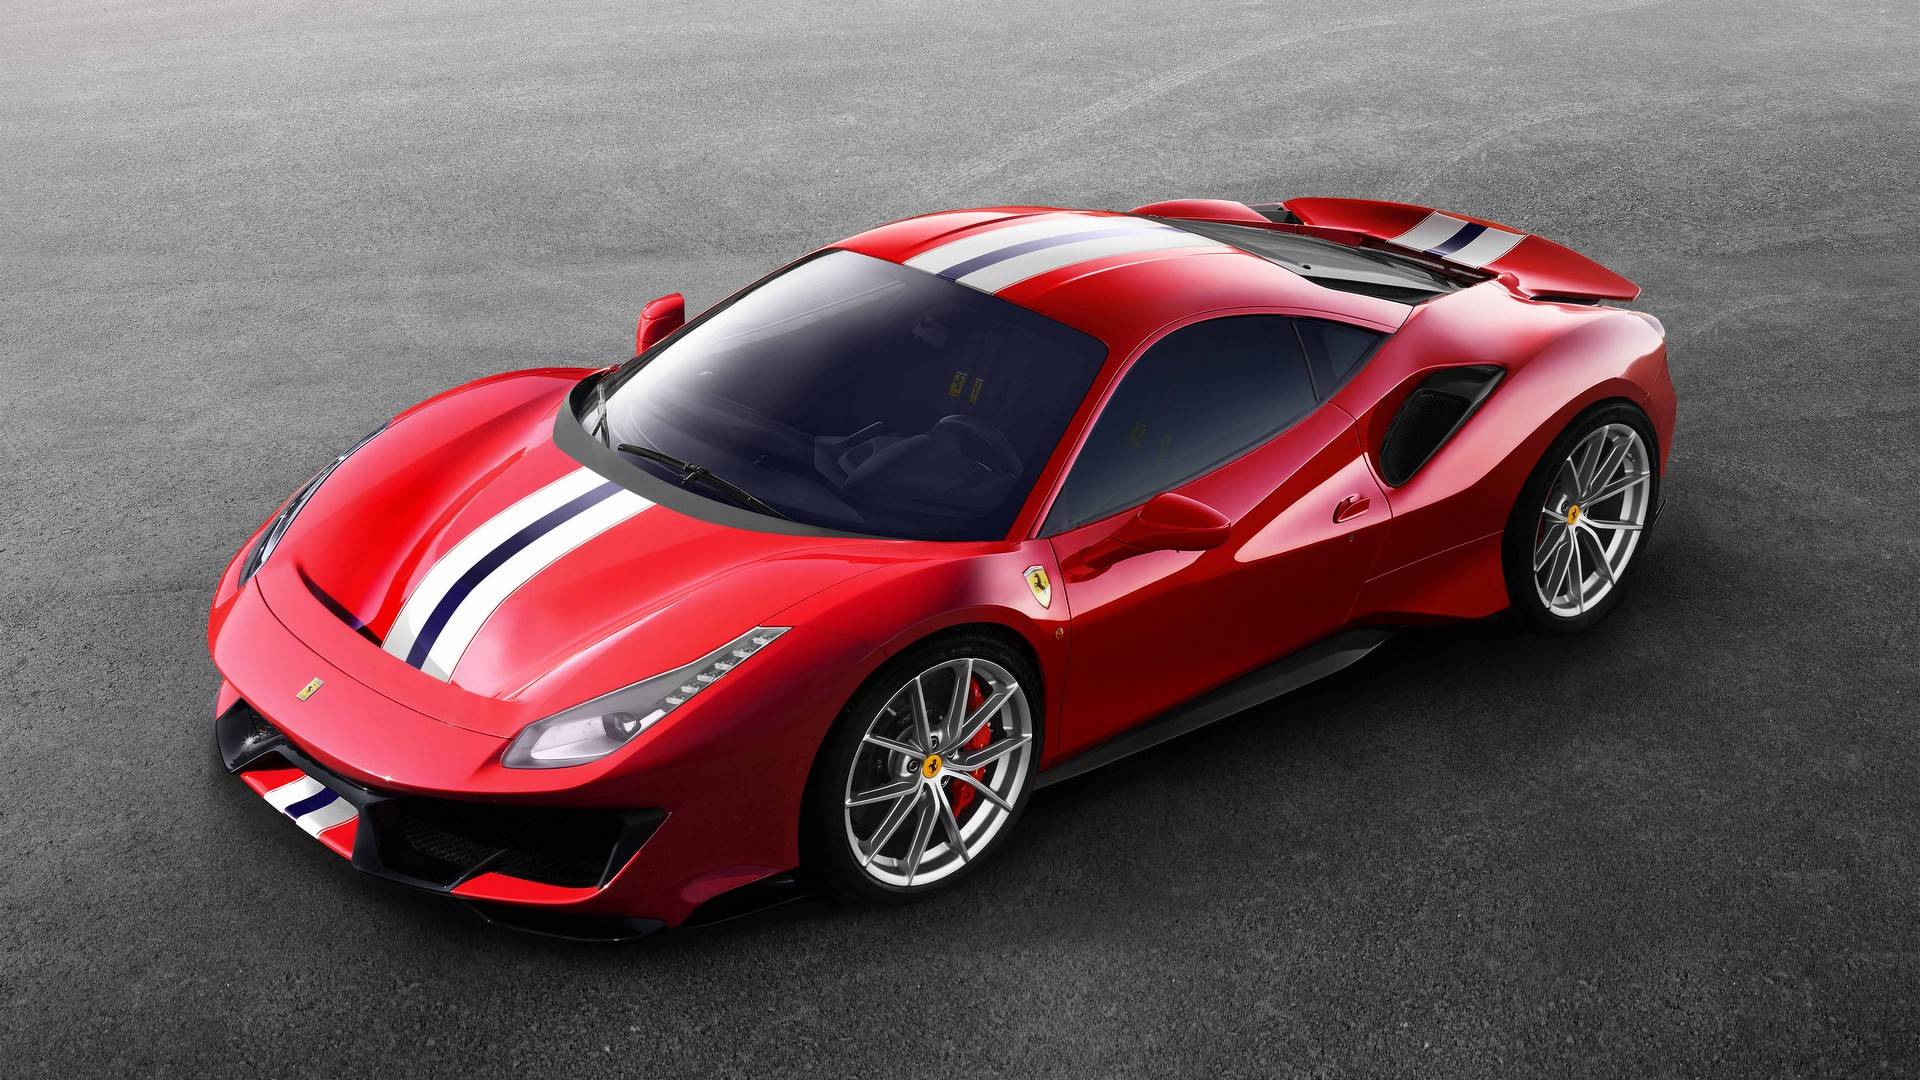 El nuevo Ferrari de Christian Nodal